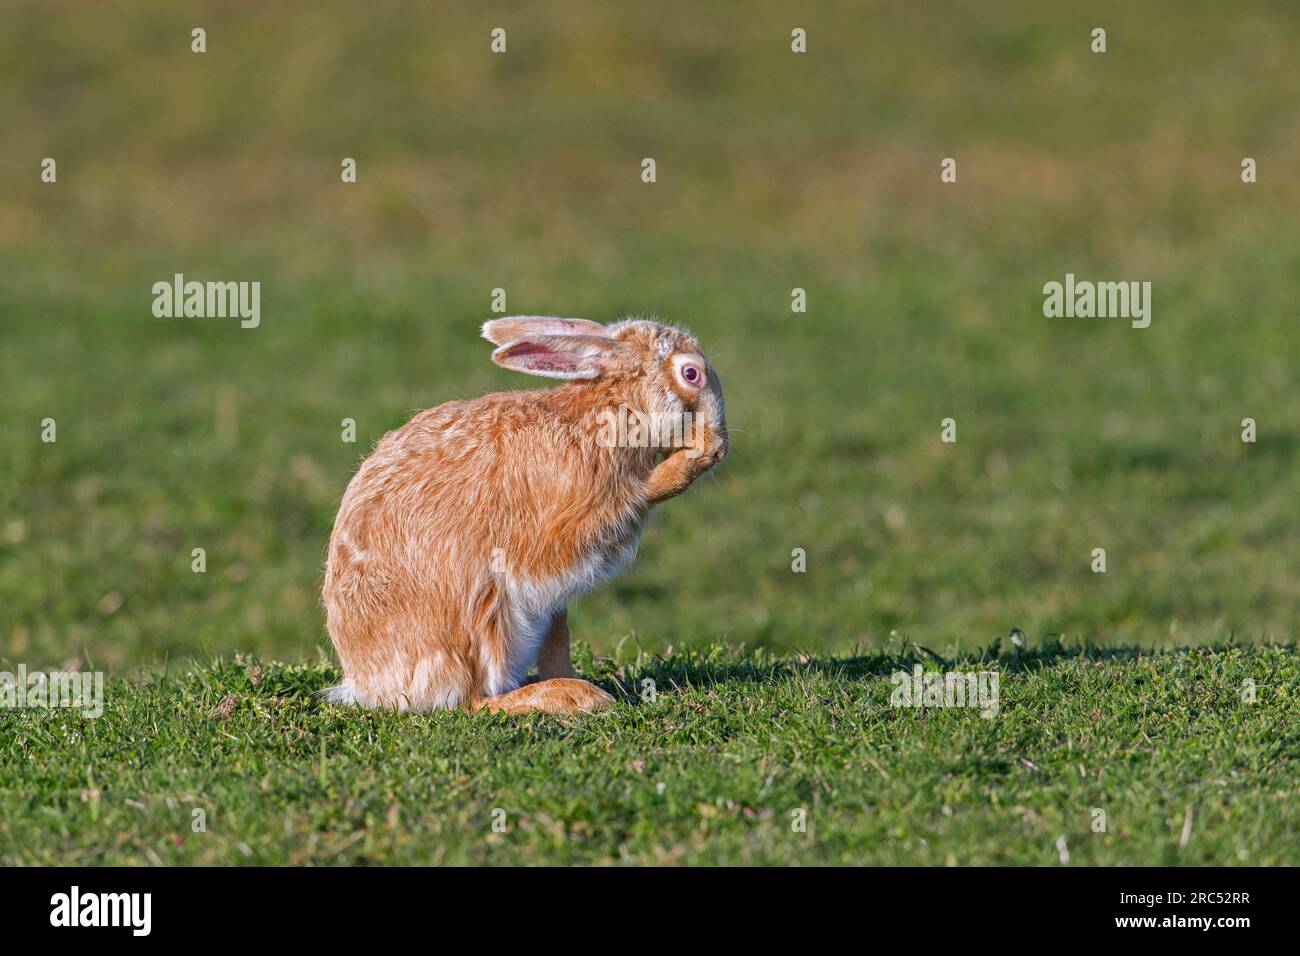 Europäischer brauner Hase (Lepus europaeus) blonder Farbmorph, der im Frühling blondes Fell auf Feld/Grünland vorfrischt Stockfoto